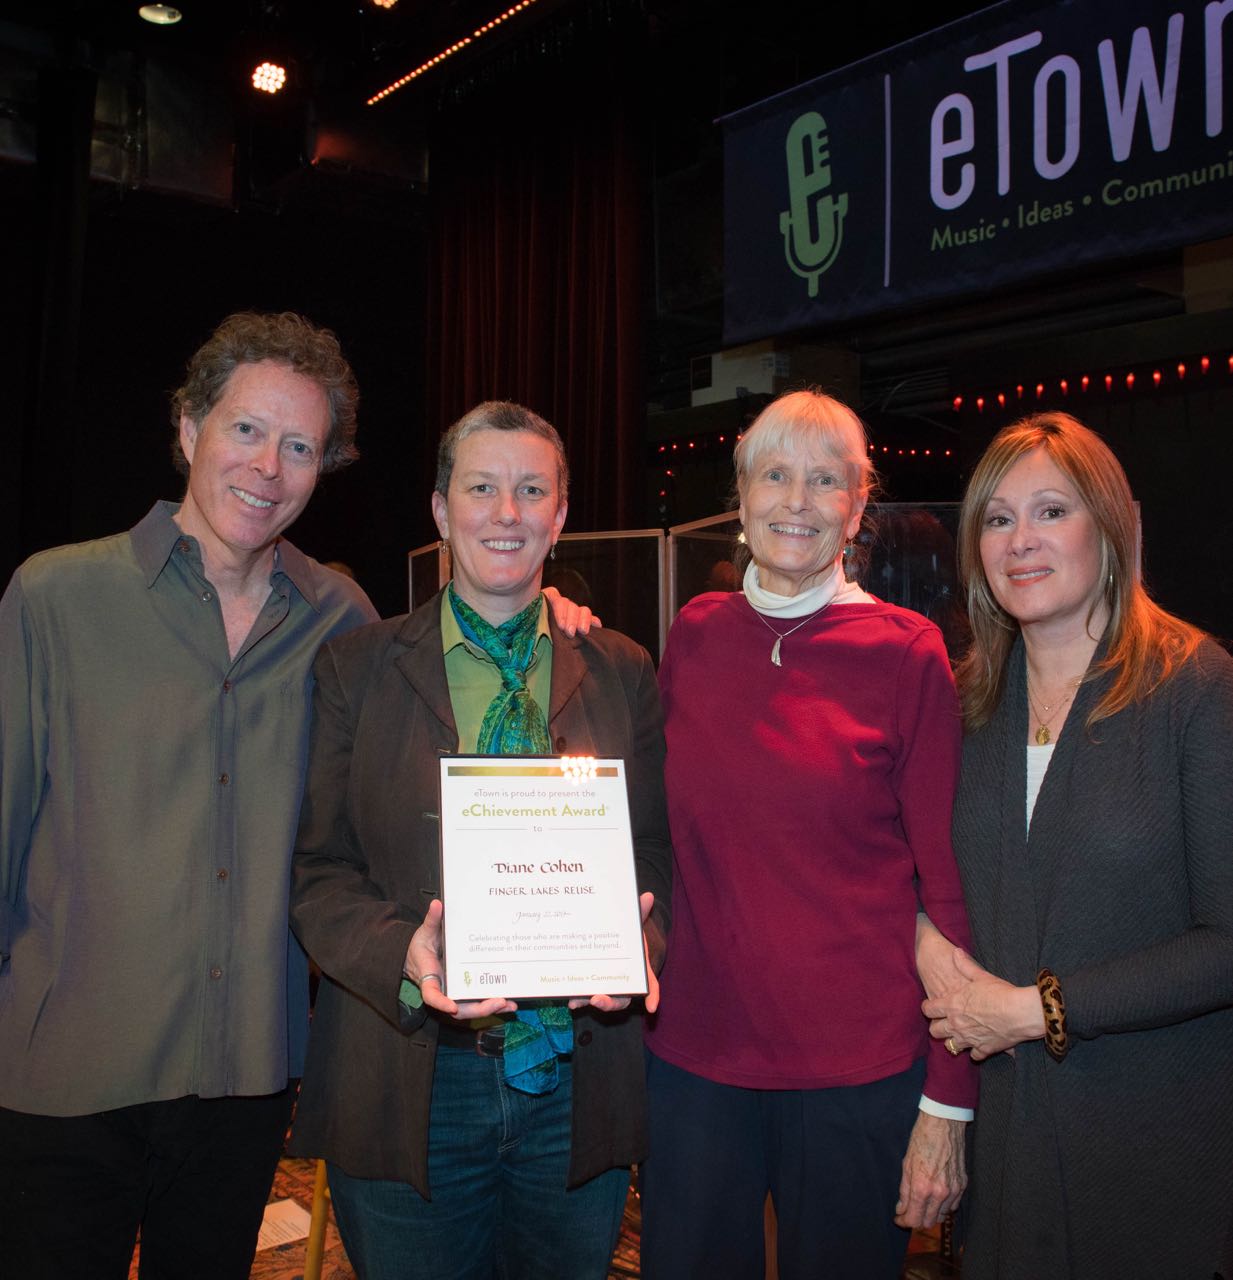 eChievement Award winner Diane Cohen - Finger Lakes ReUse - eTown